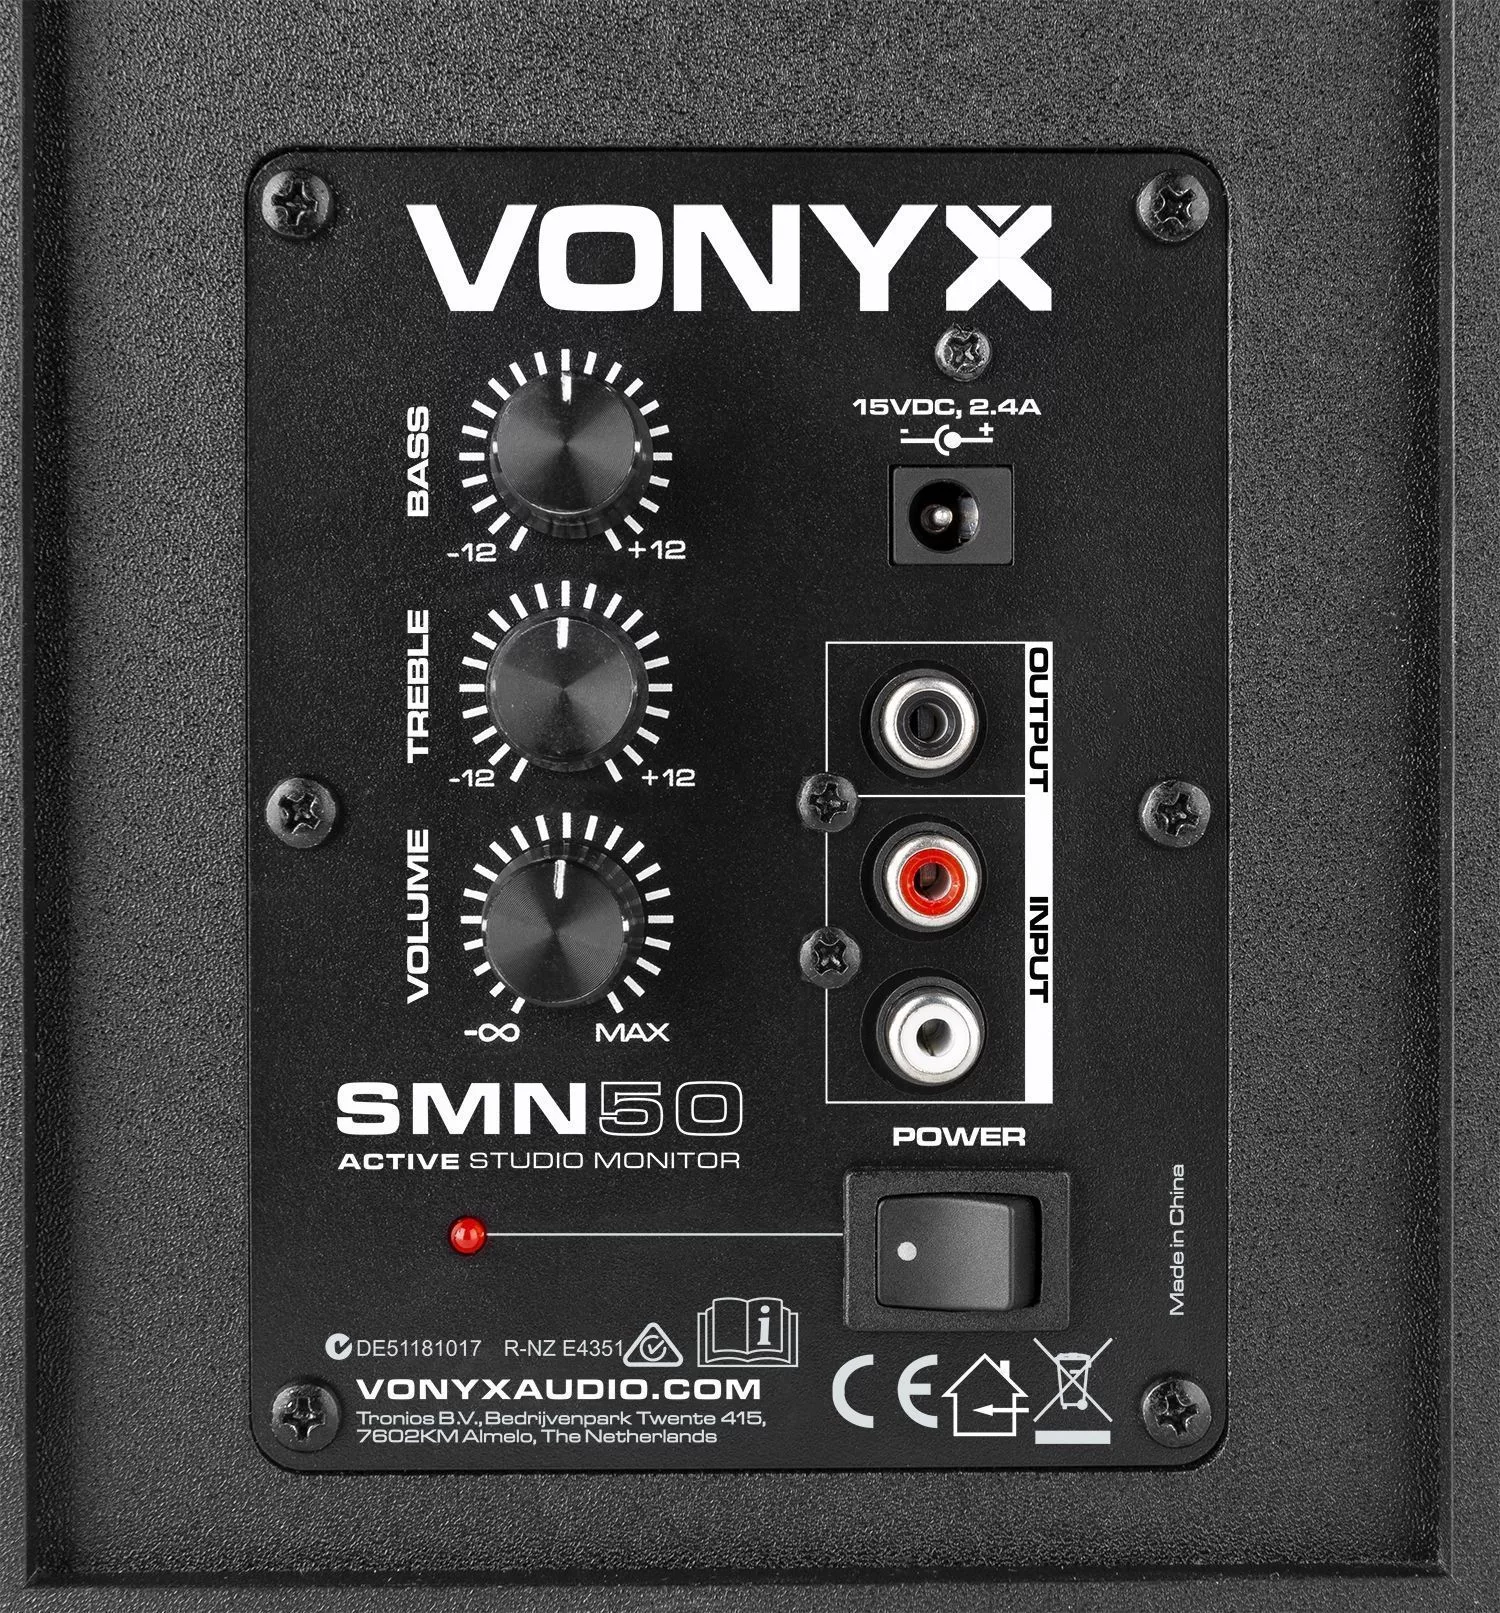 Vonyx retourdeals studio monitors|studio monitors